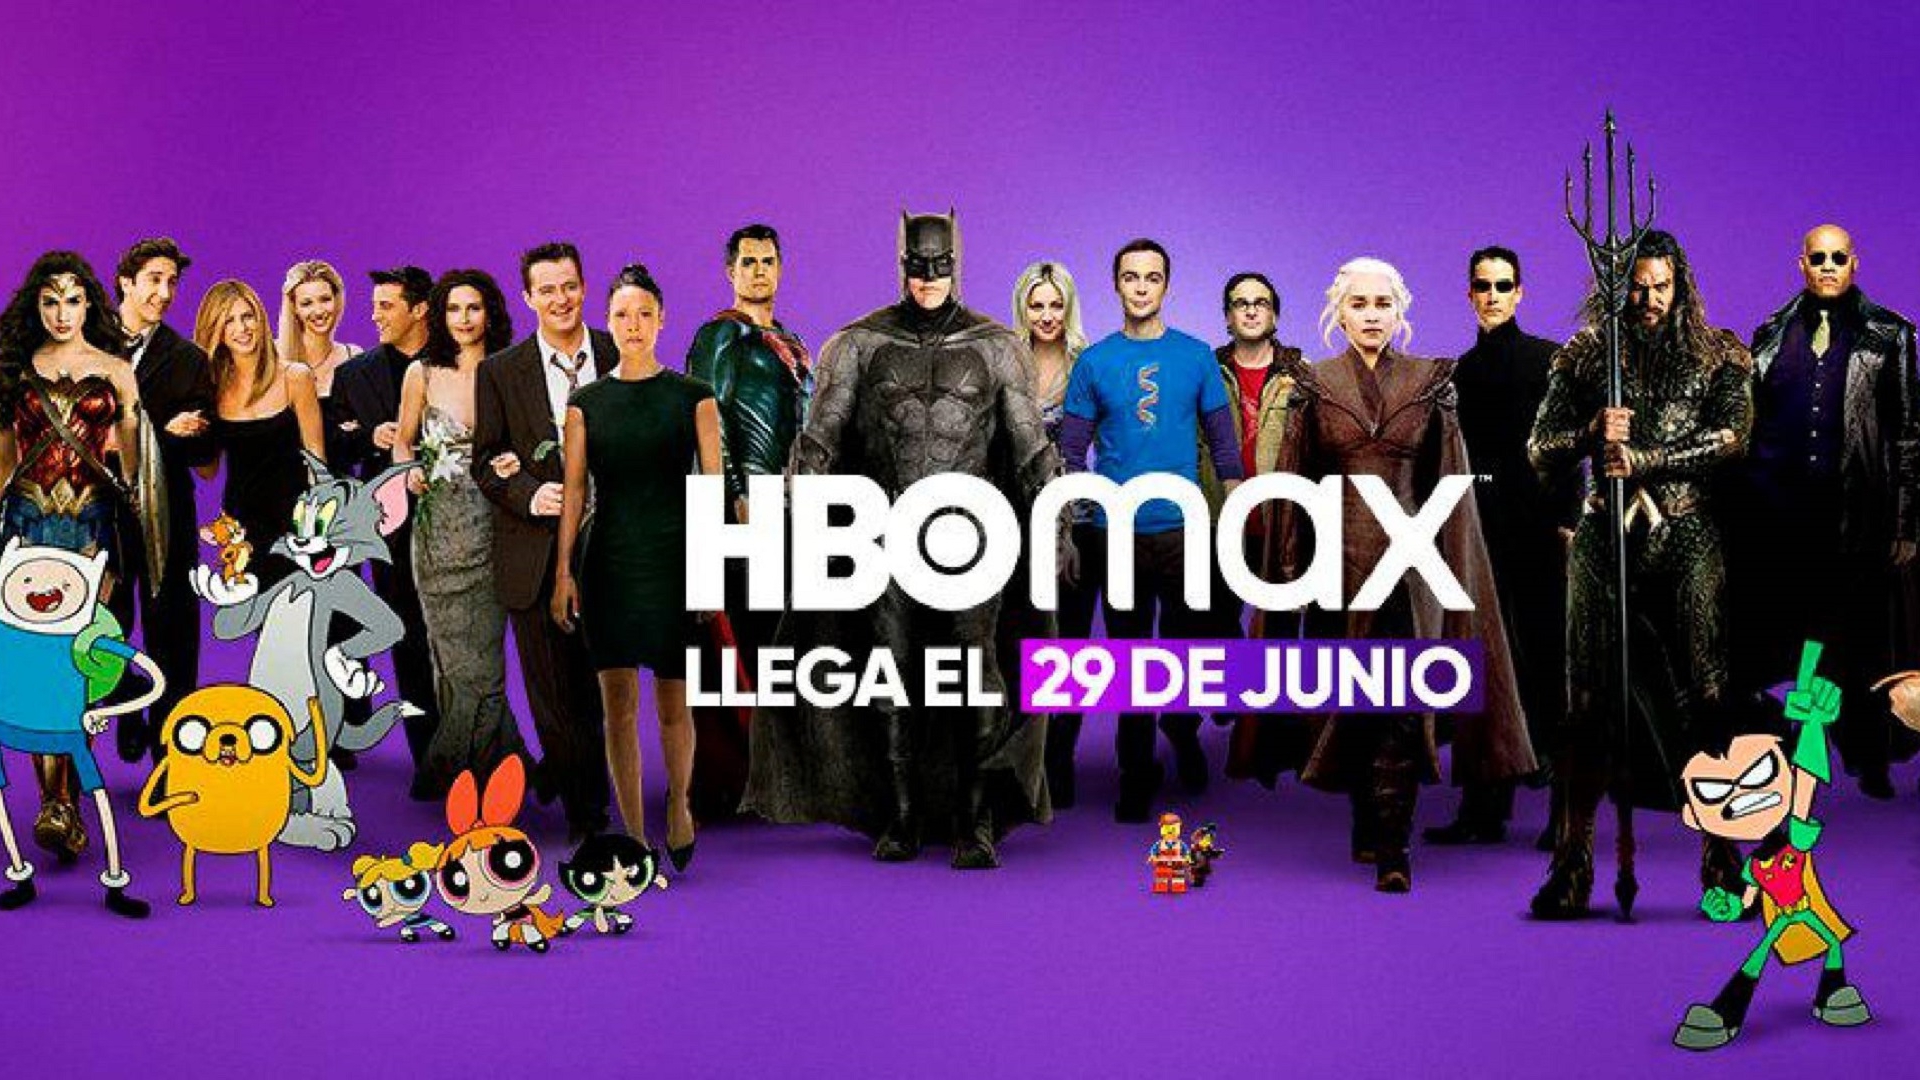 HBO Max Latinoamérica llega el 29 de junio: precios, planes y contenidos